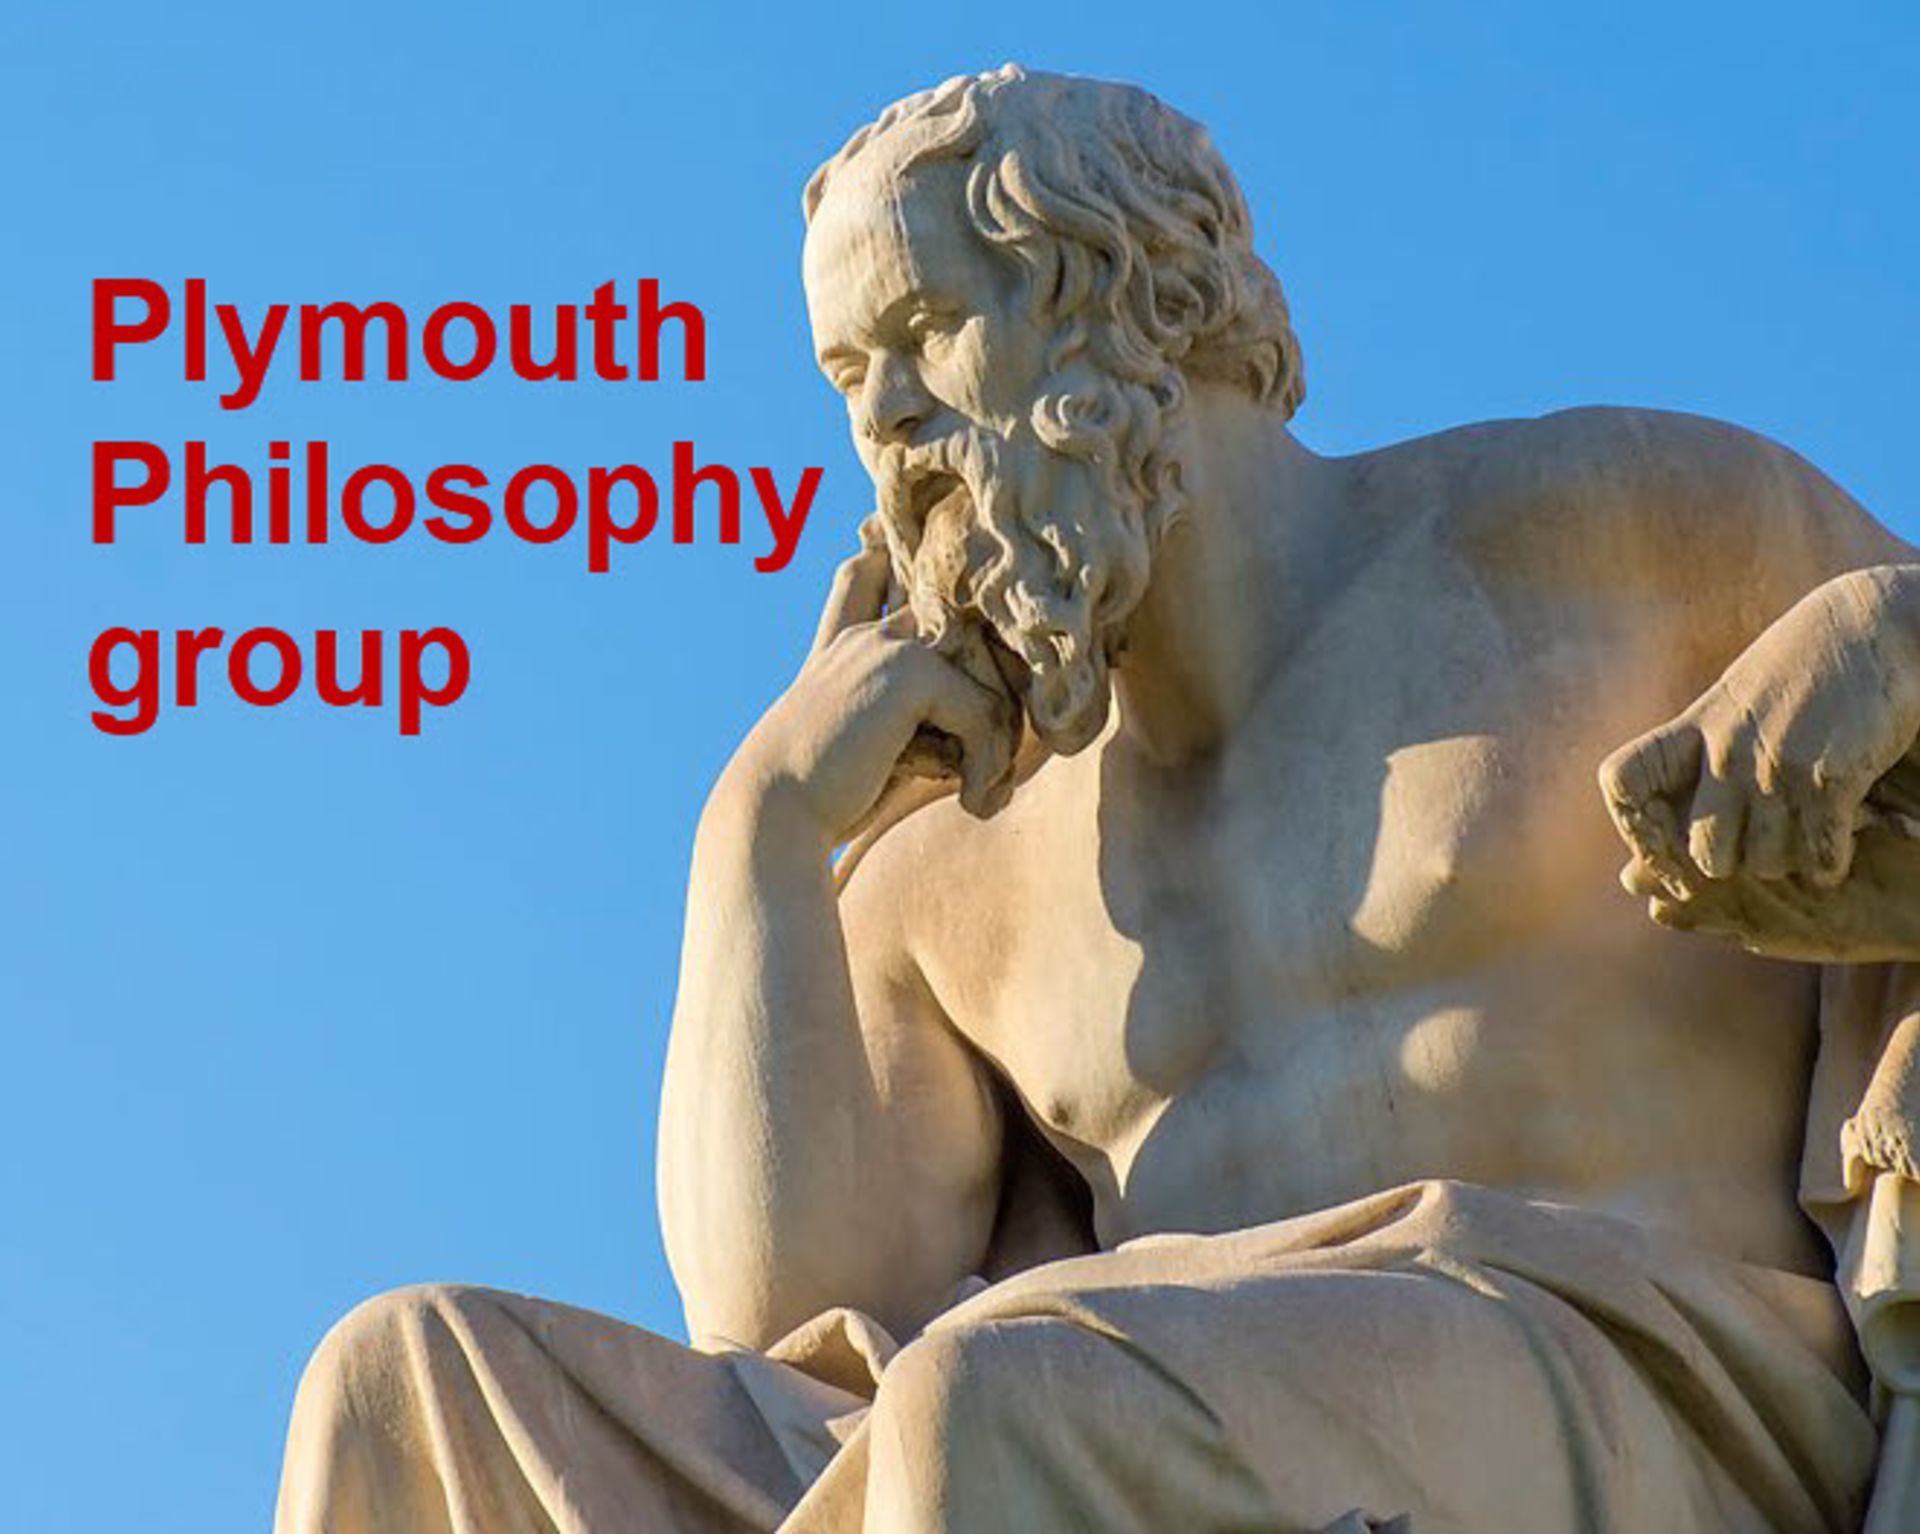 Plymouth Philosophy group seeks new members